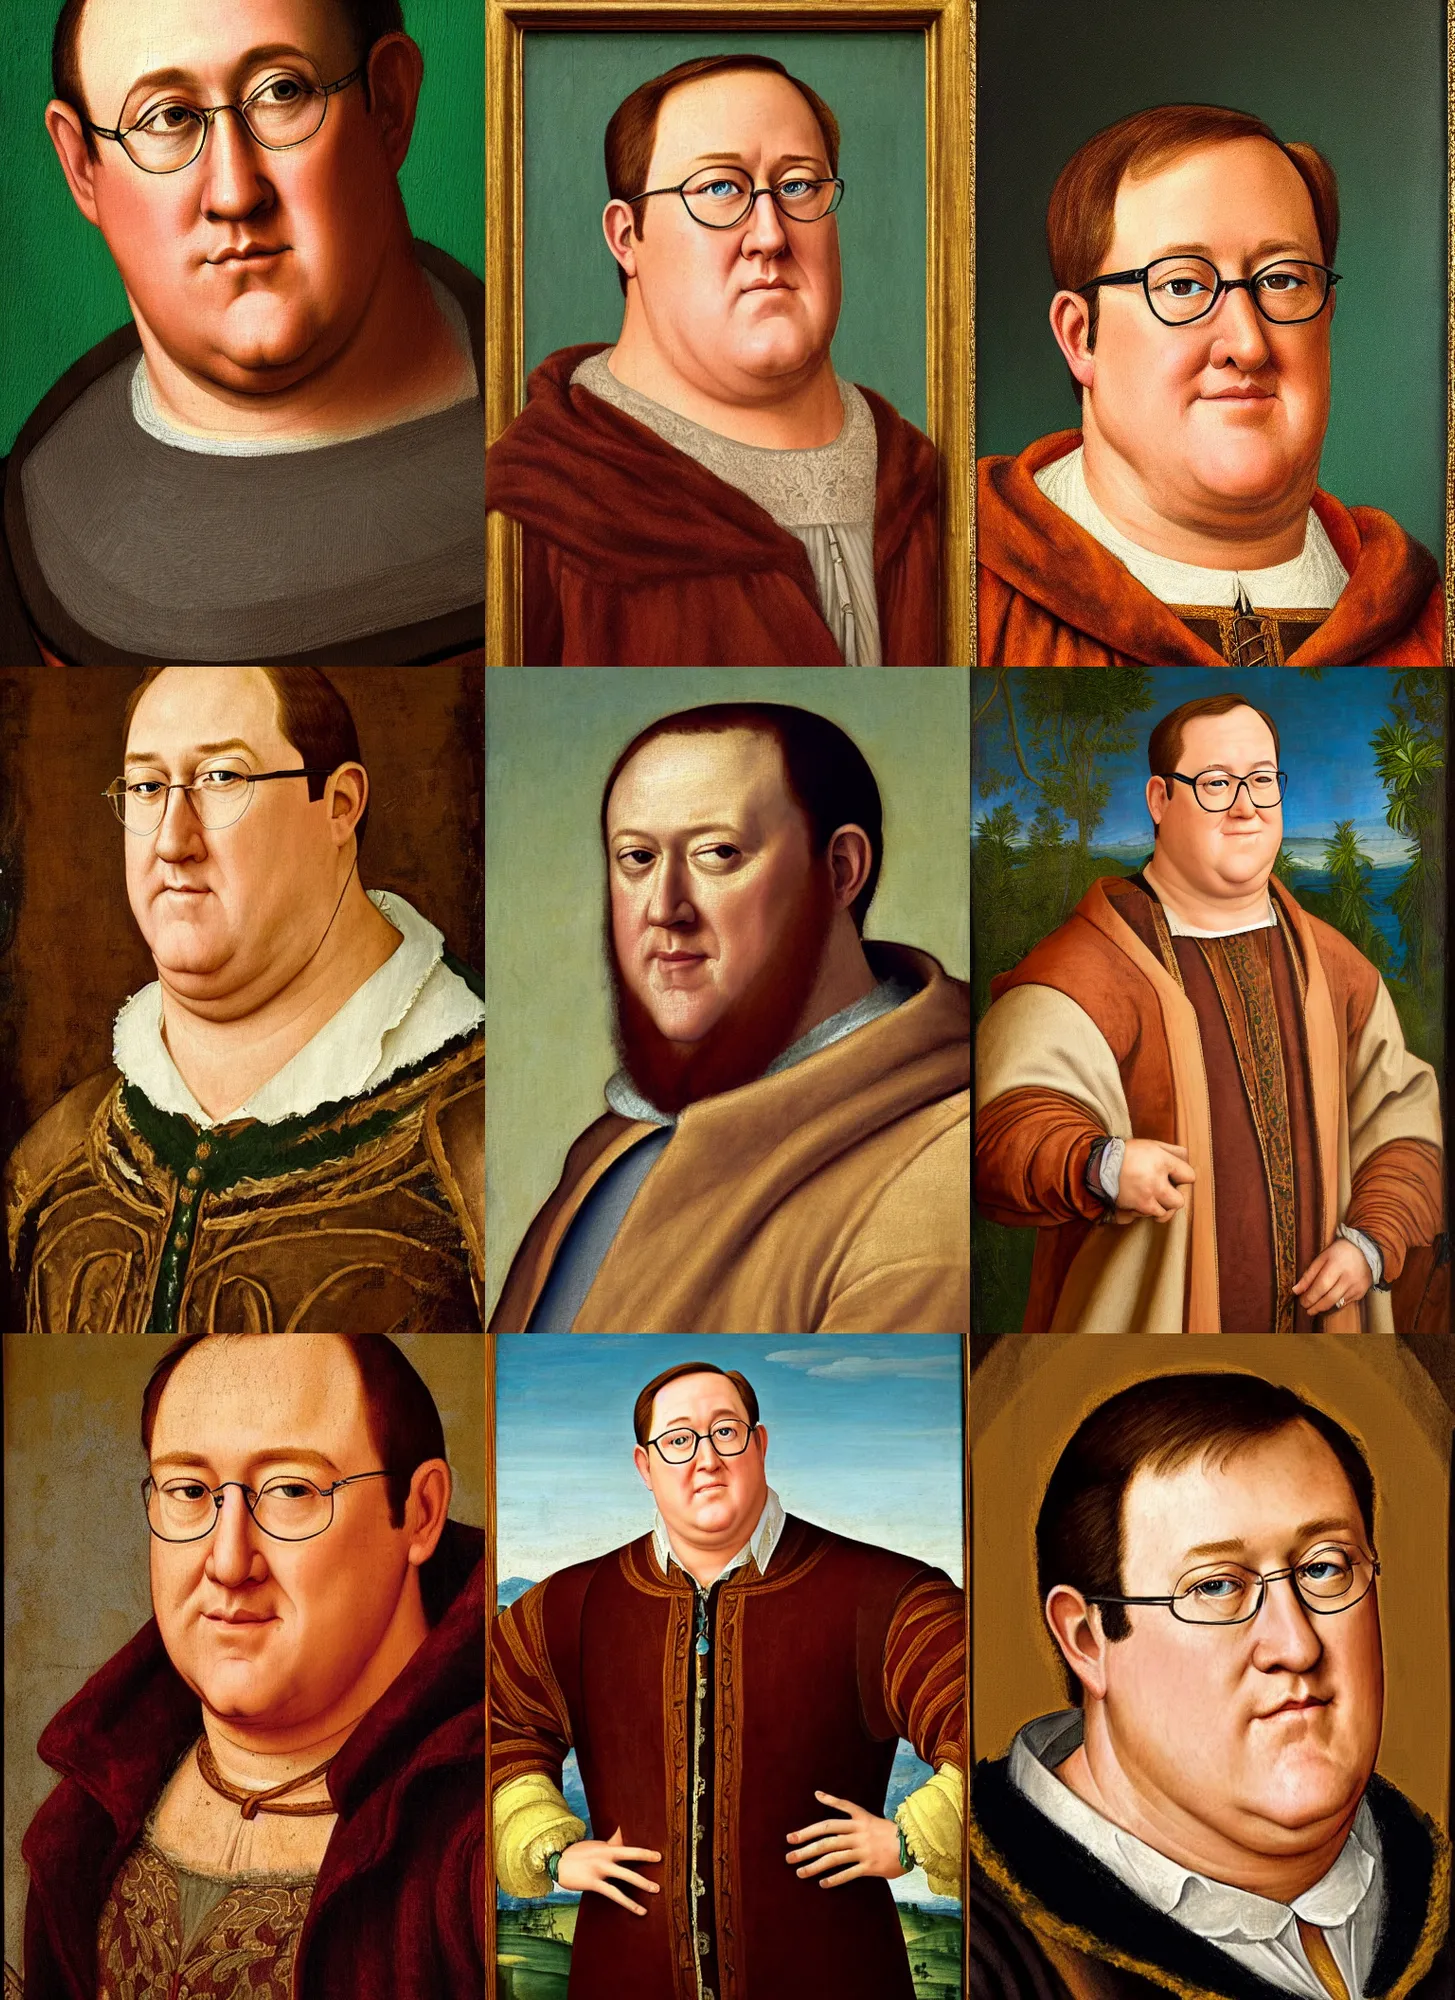 Prompt: a renaissance style portrait painting of John Lasseter